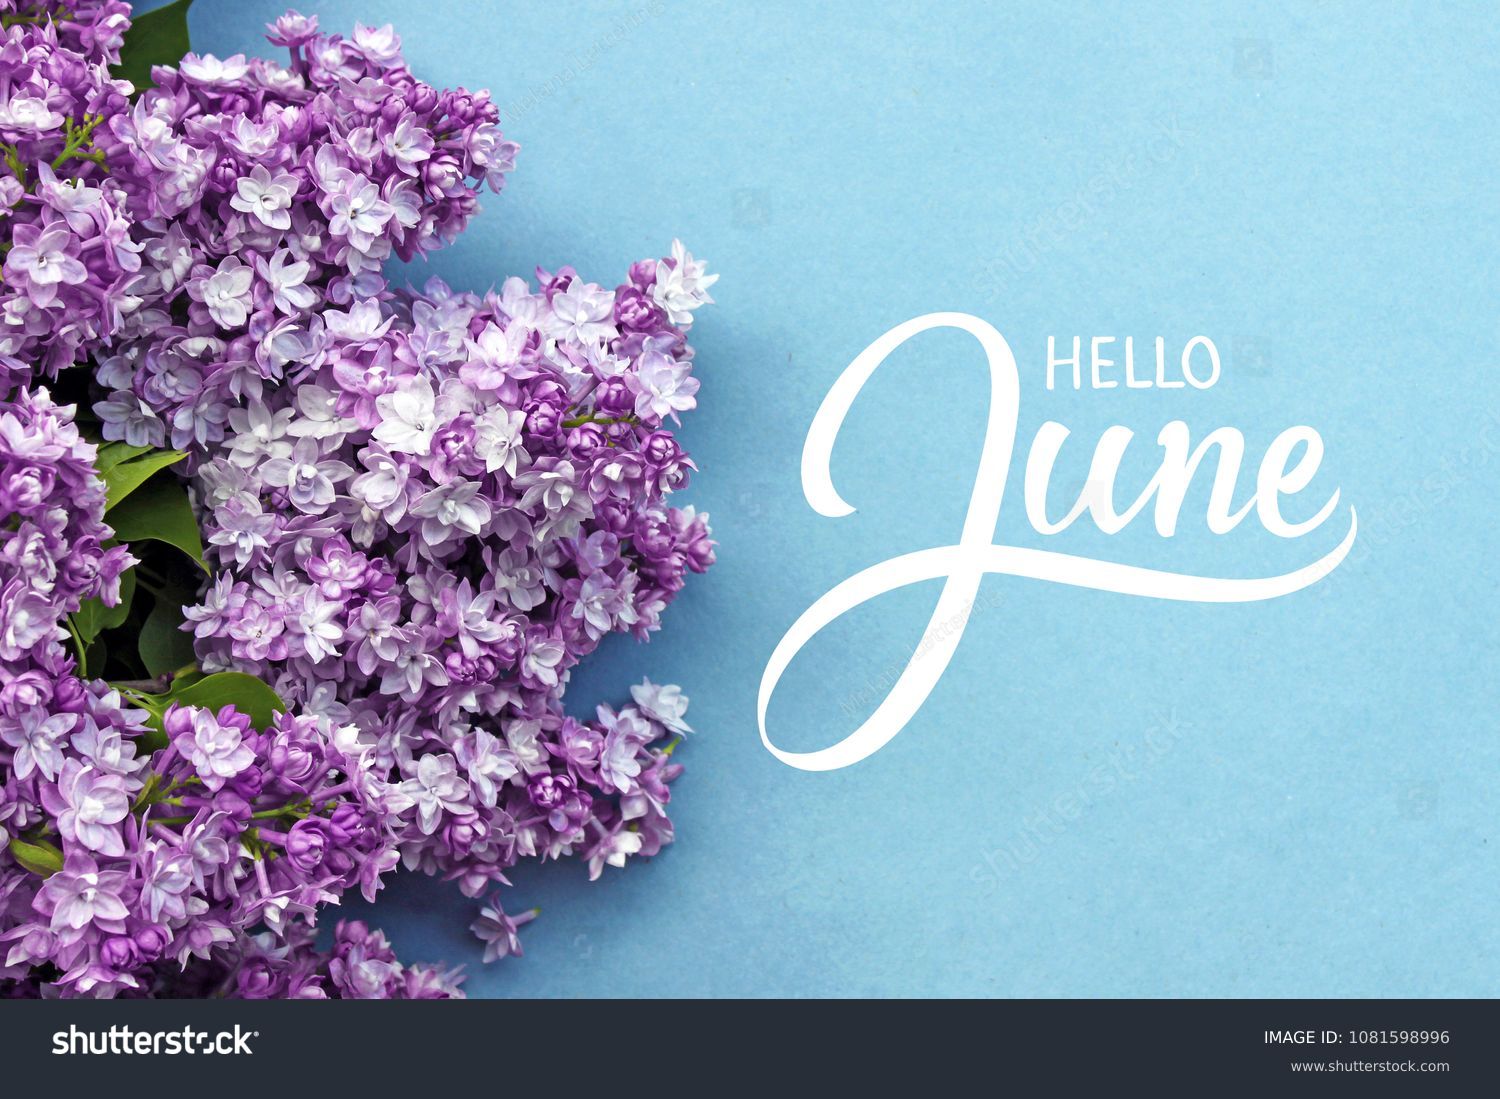 こんにちは 6月の手書きのカード 青の背景に夏のライラック花 の写真素材 今すぐ編集